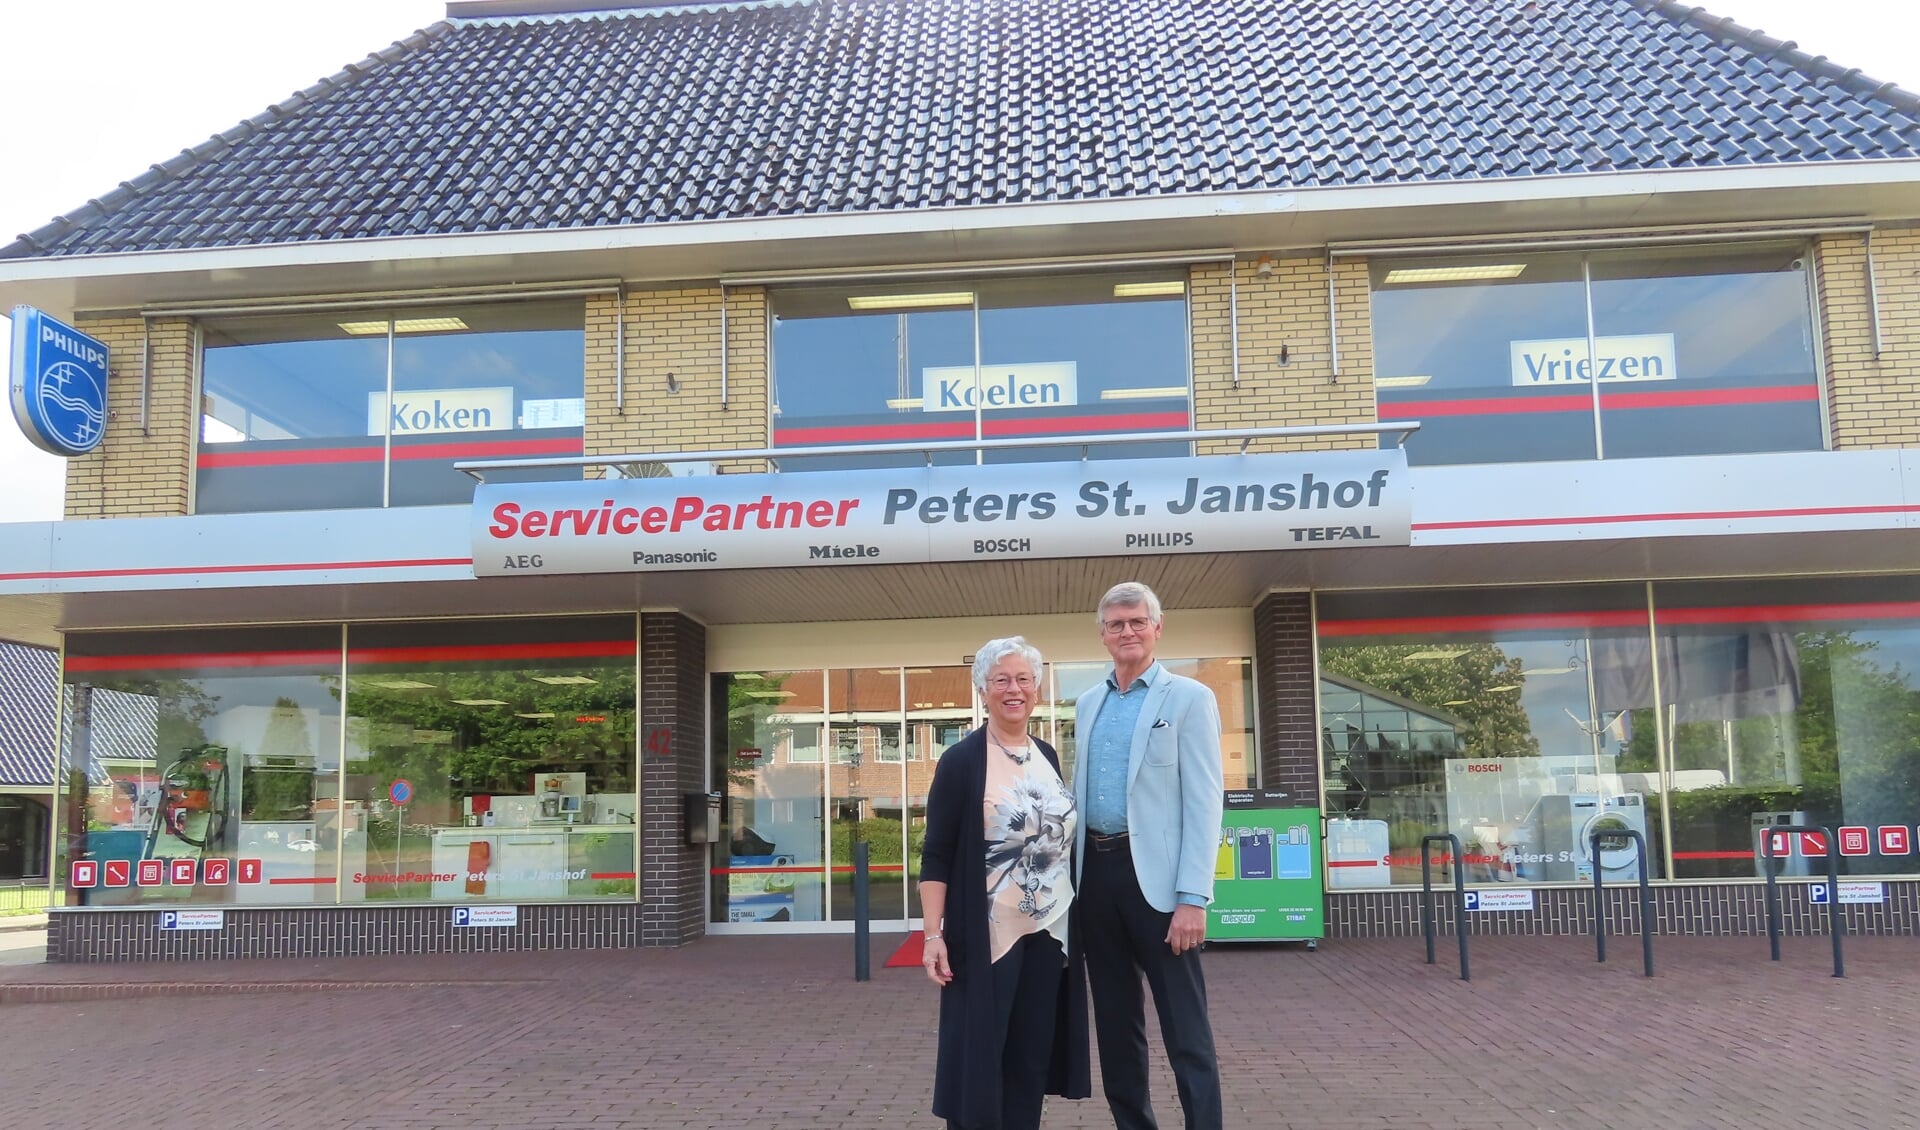 Sjef en Henrita sluiten de winkel aan de Kerkstraat 42 in Didam op 1 juli